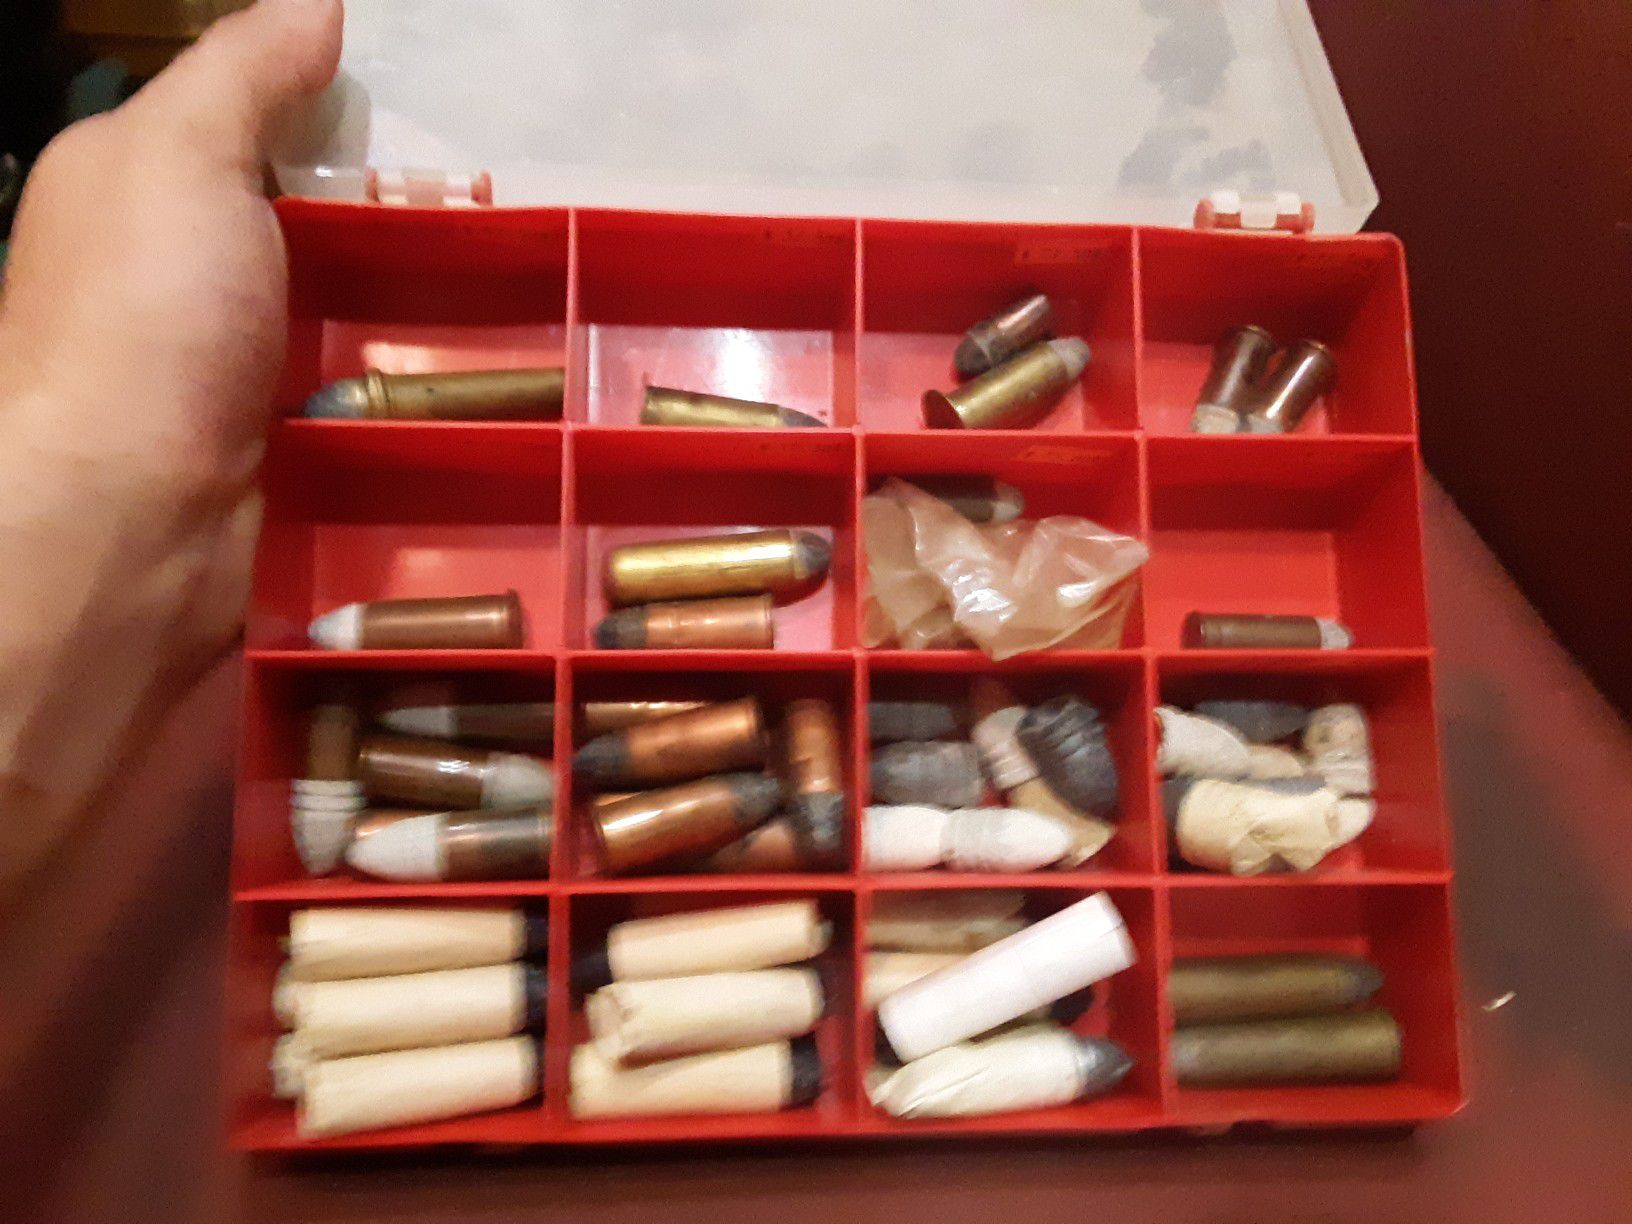 Antique bullets